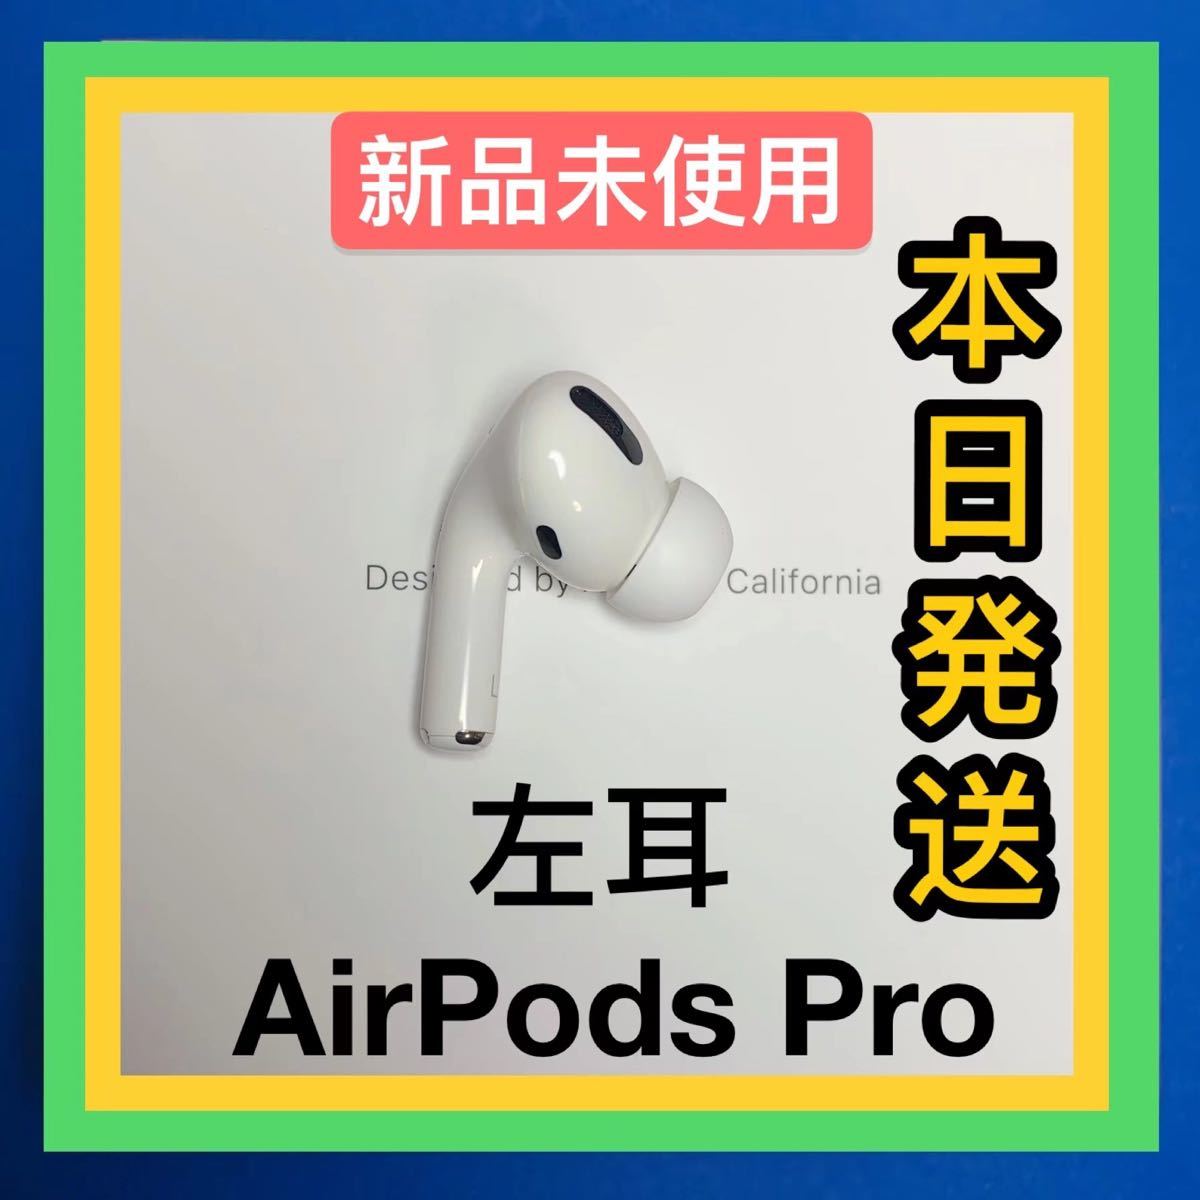 7510円 【コンビニ受取対応商品】 新品 AirPods Pro 左耳のみ 片耳